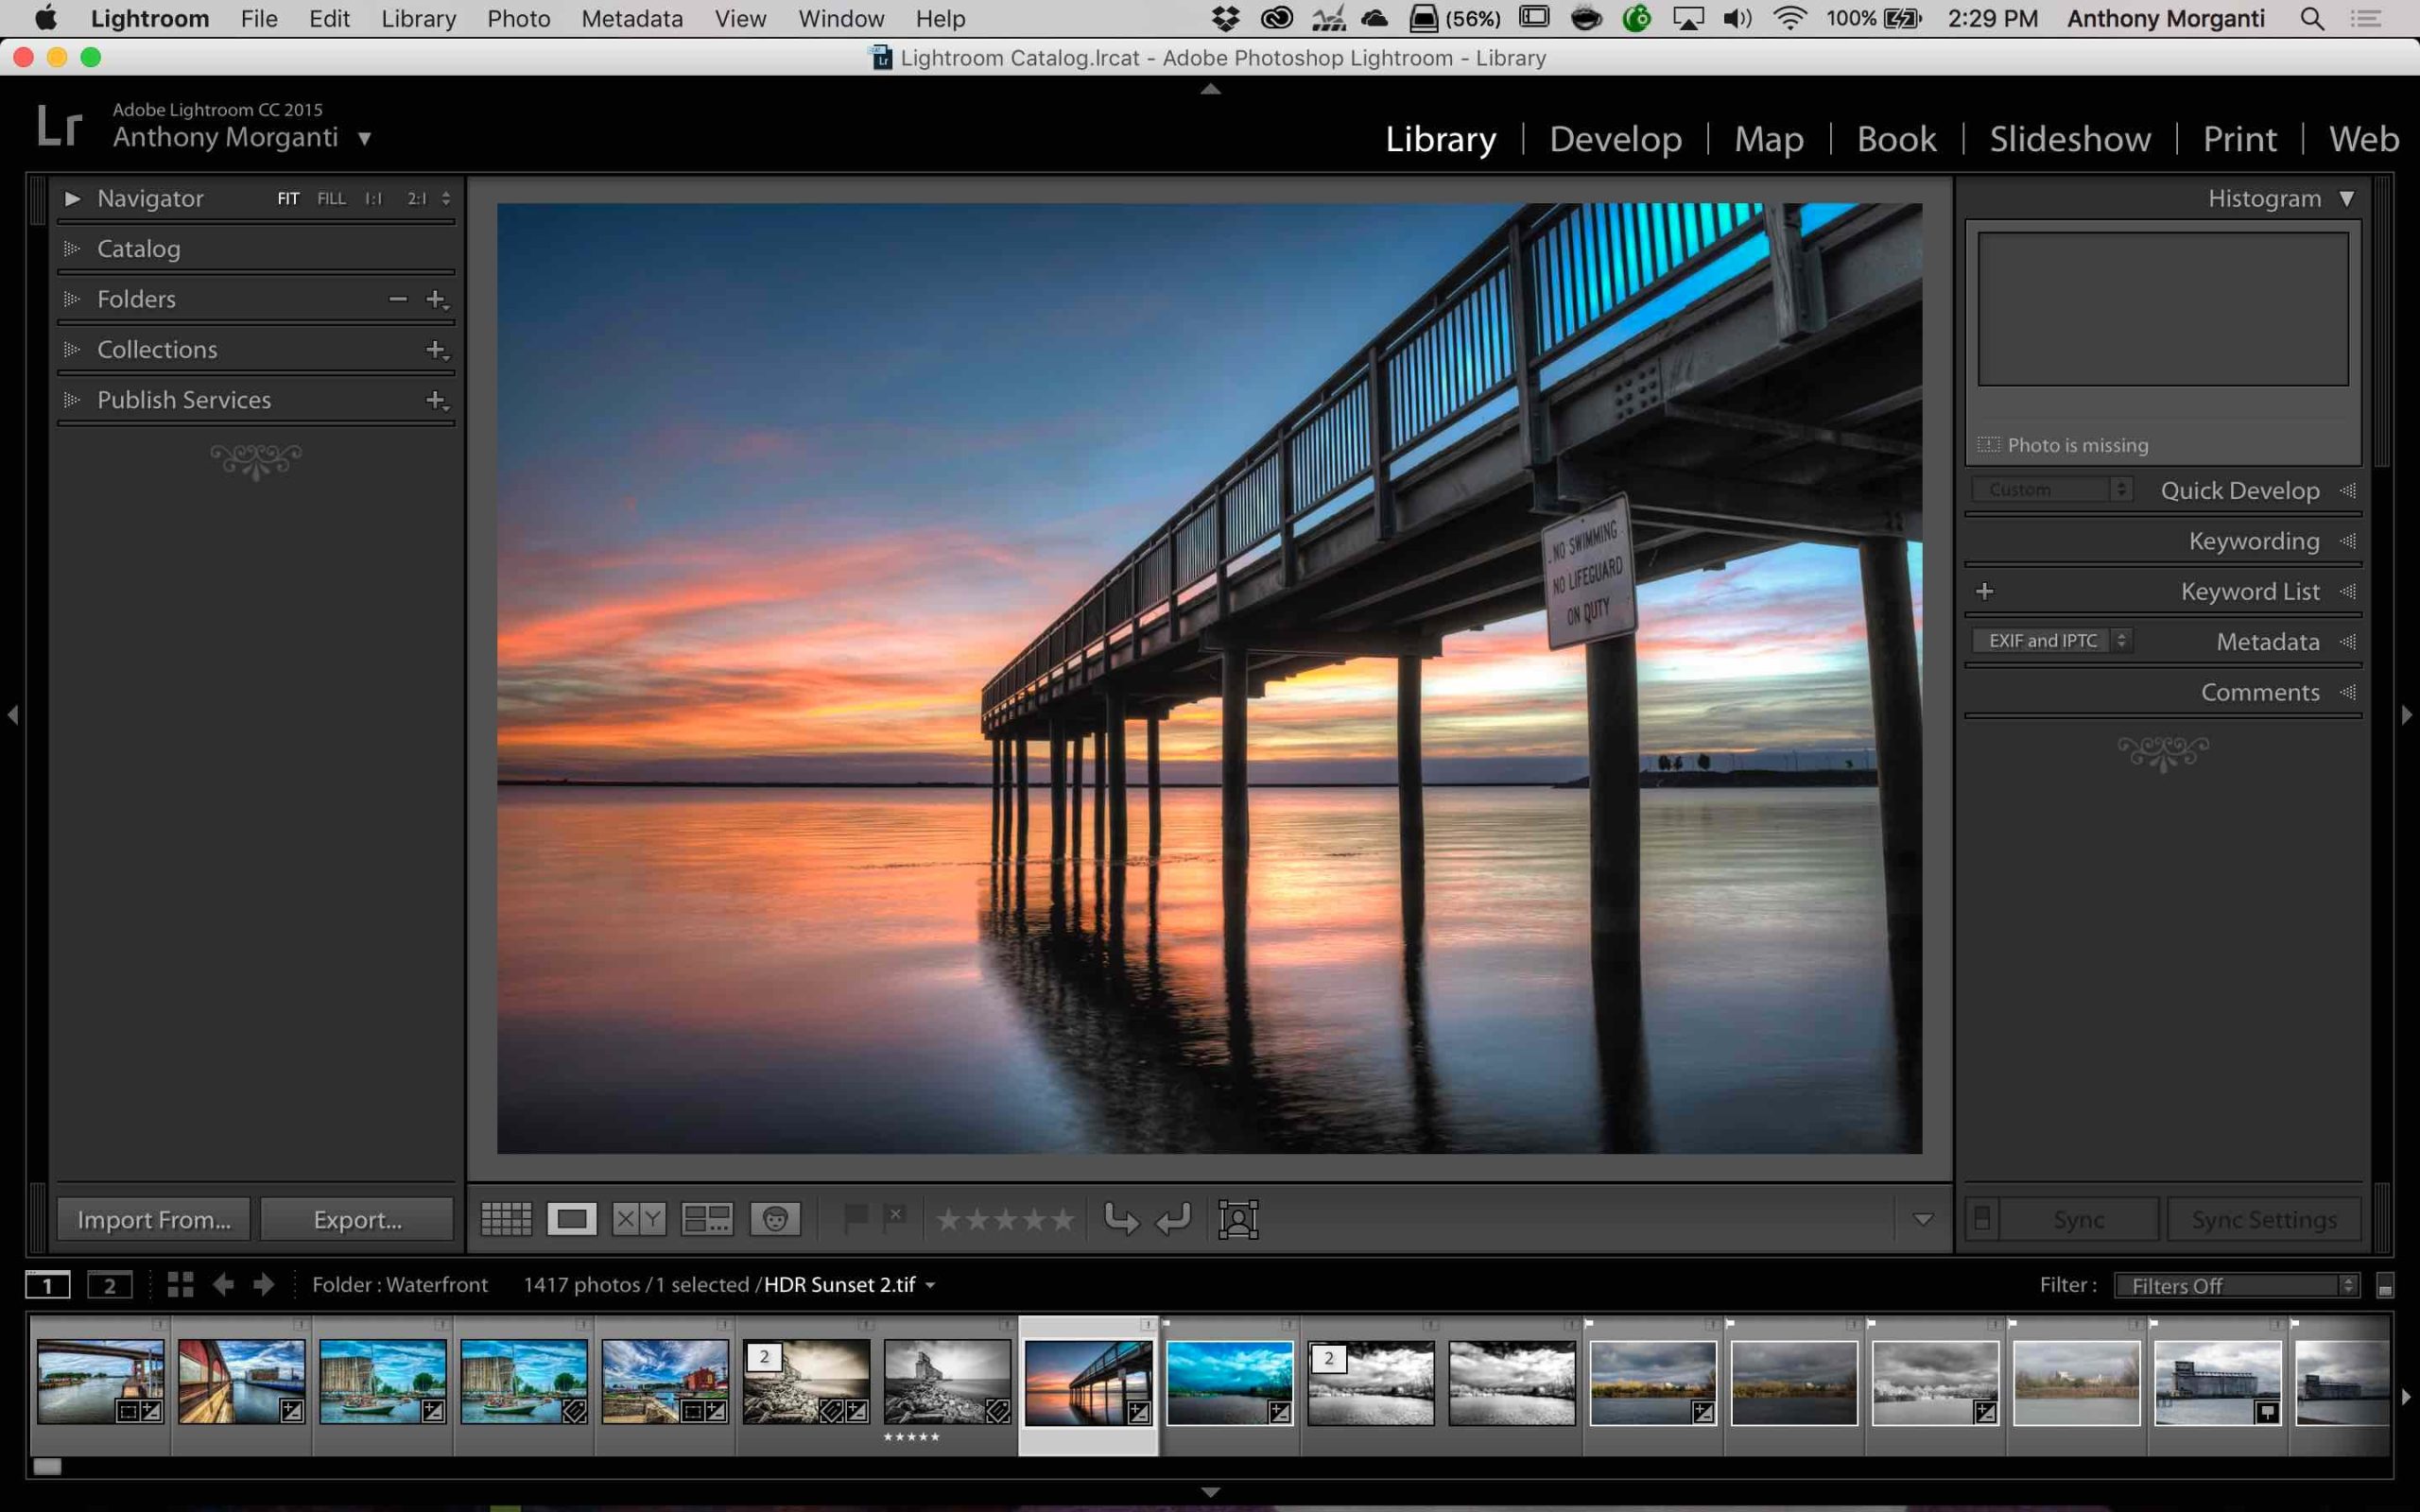 Adobe Photoshop Lightroom 5.2 Crack With License Key Download 2022 